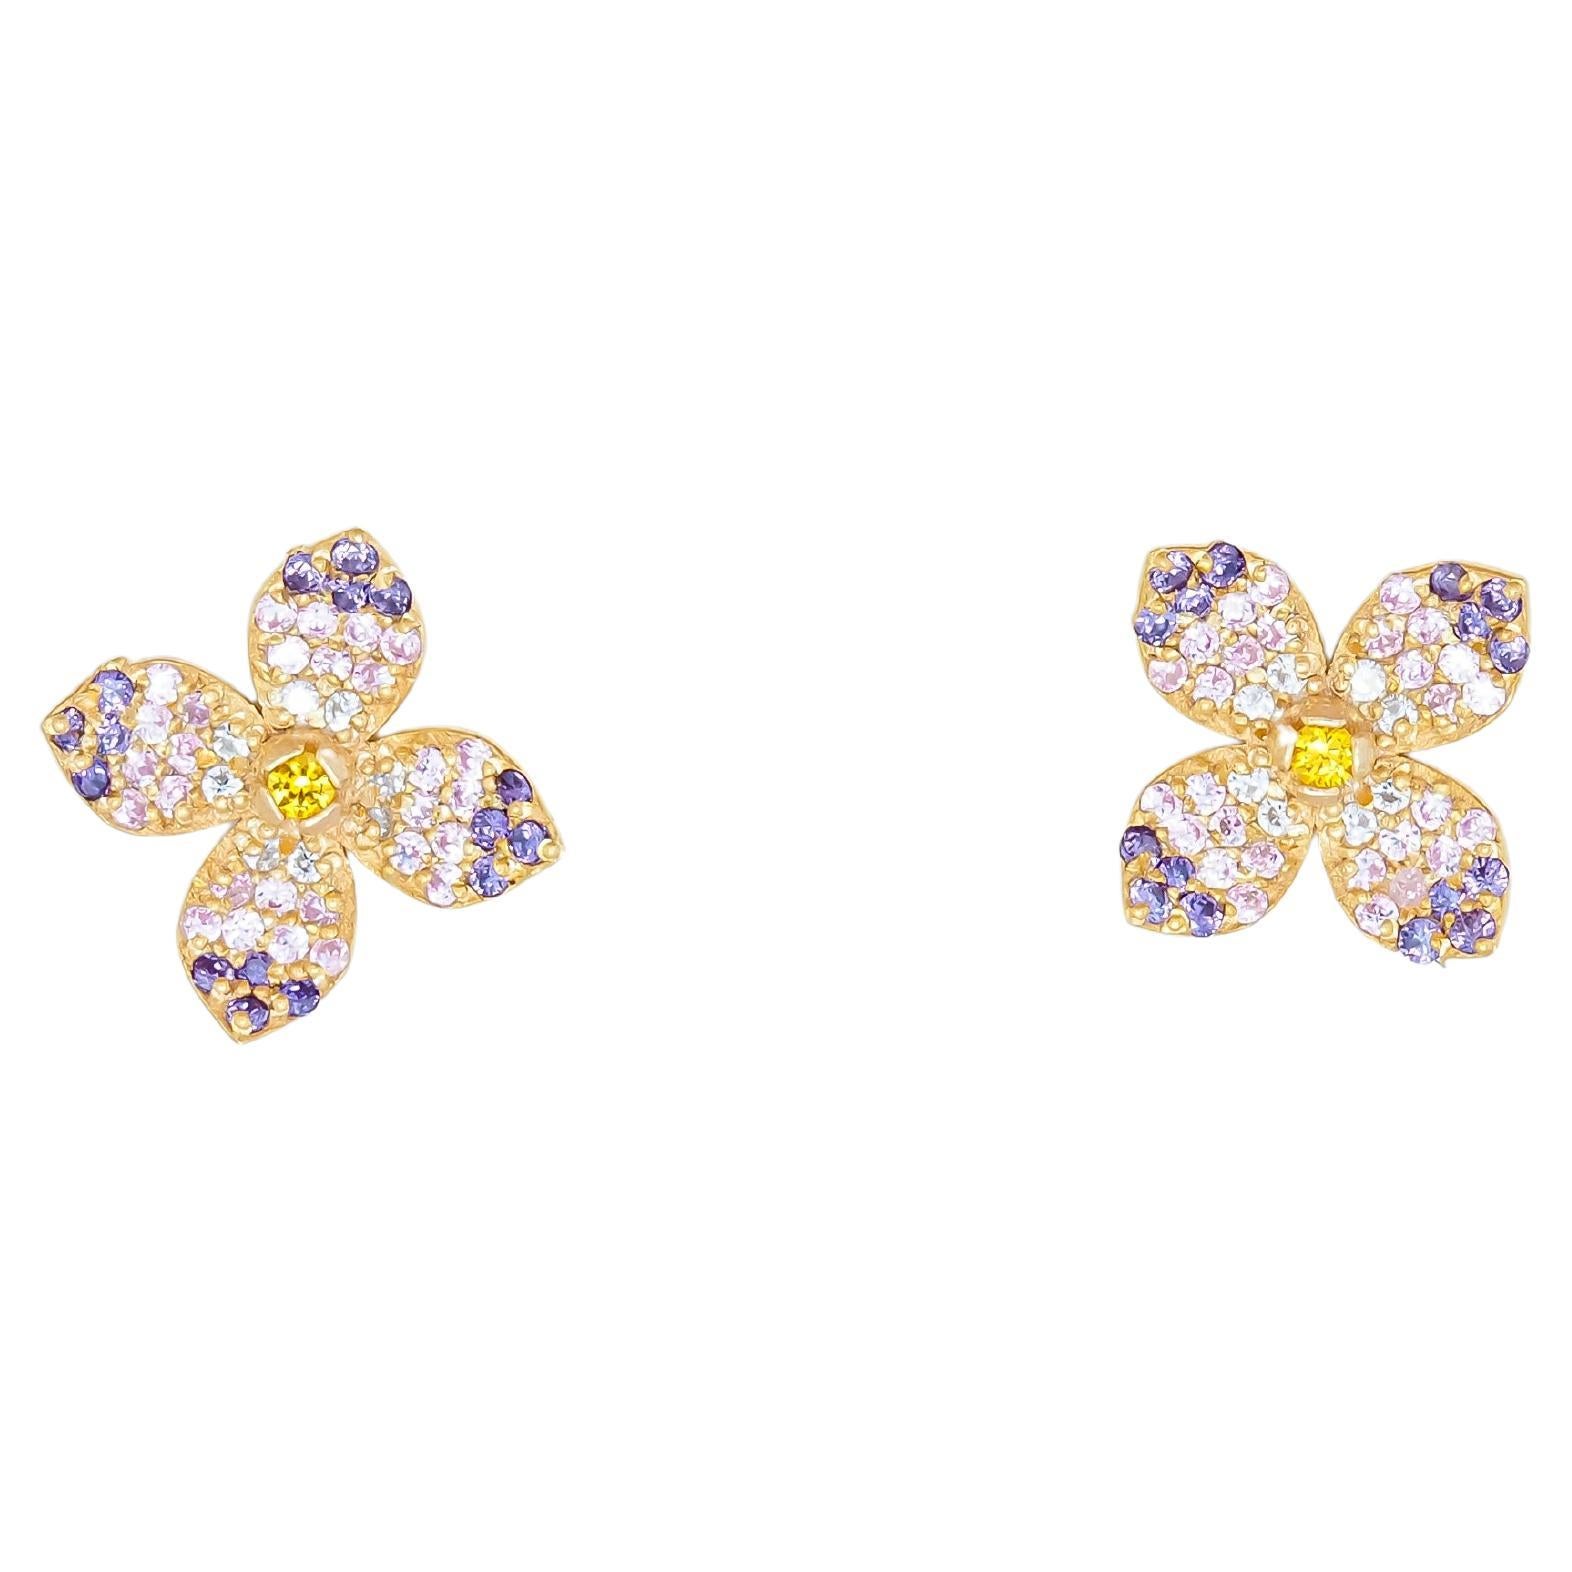 Flower earrings studs in 14k gold. 